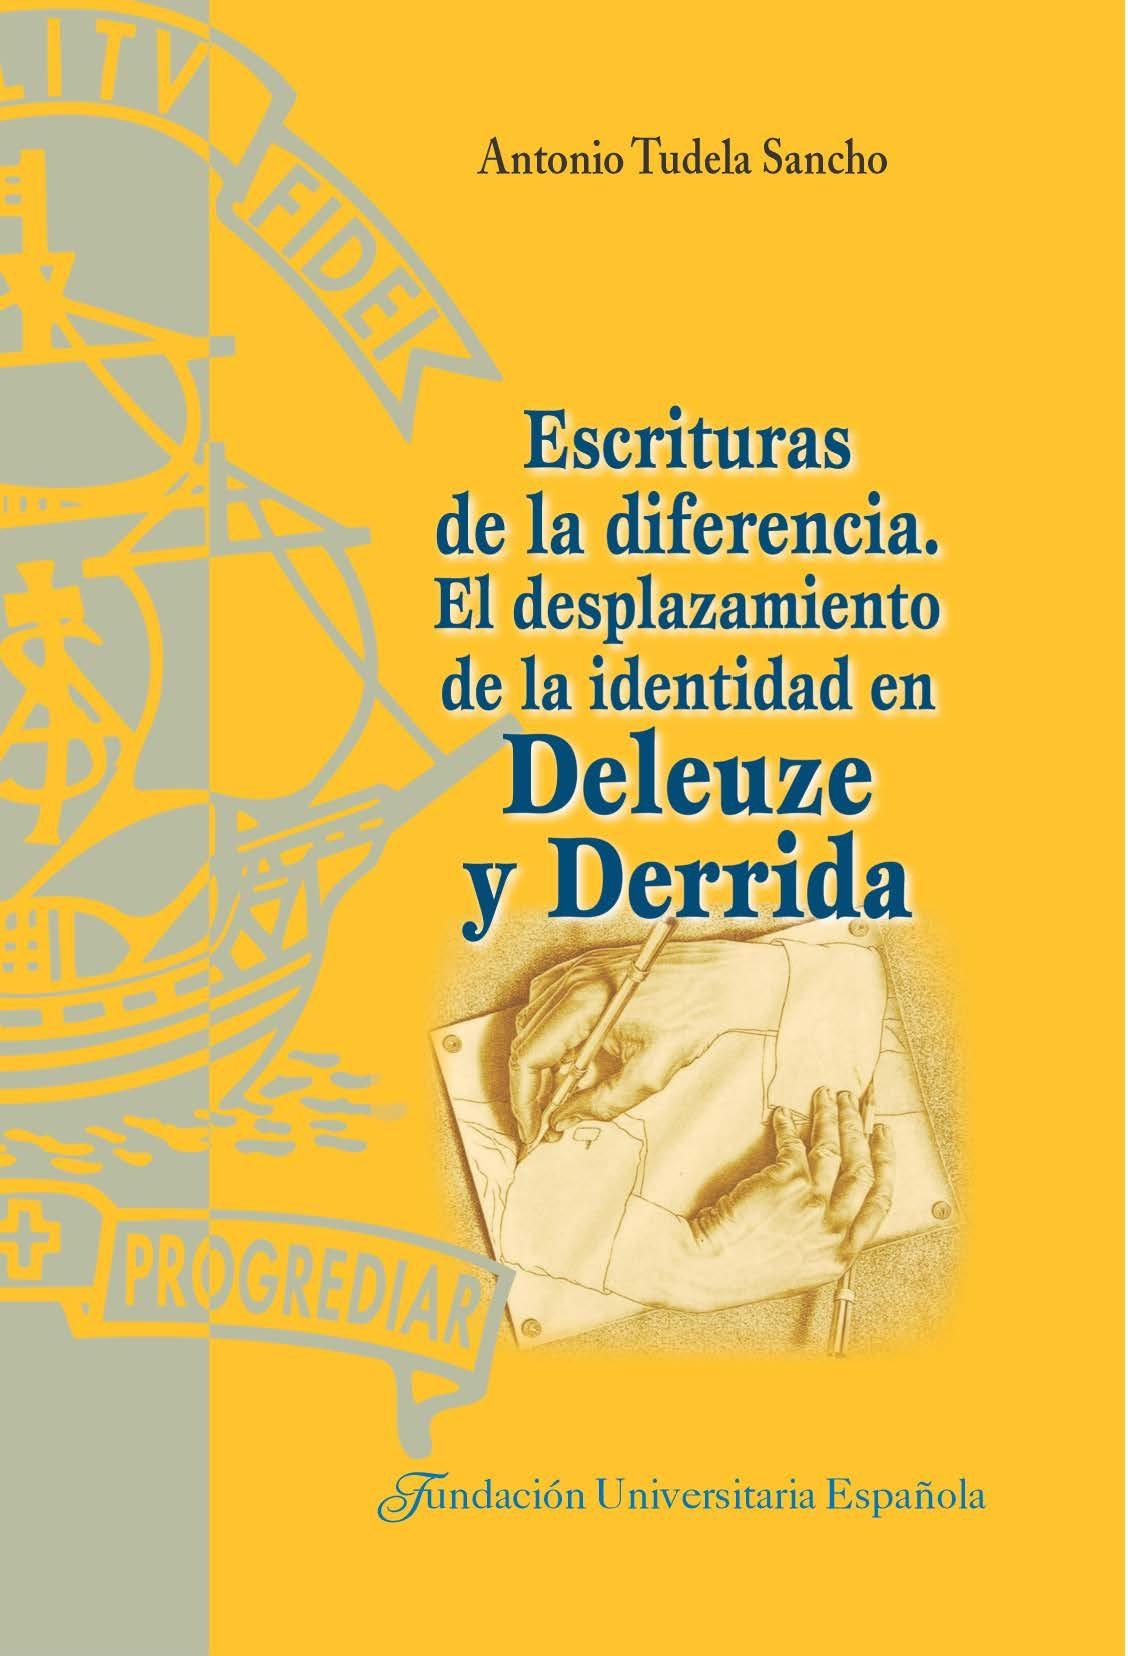 Escrituras de la diferencia "El desplazamiento de la identidad en Deleuze y Derrida"